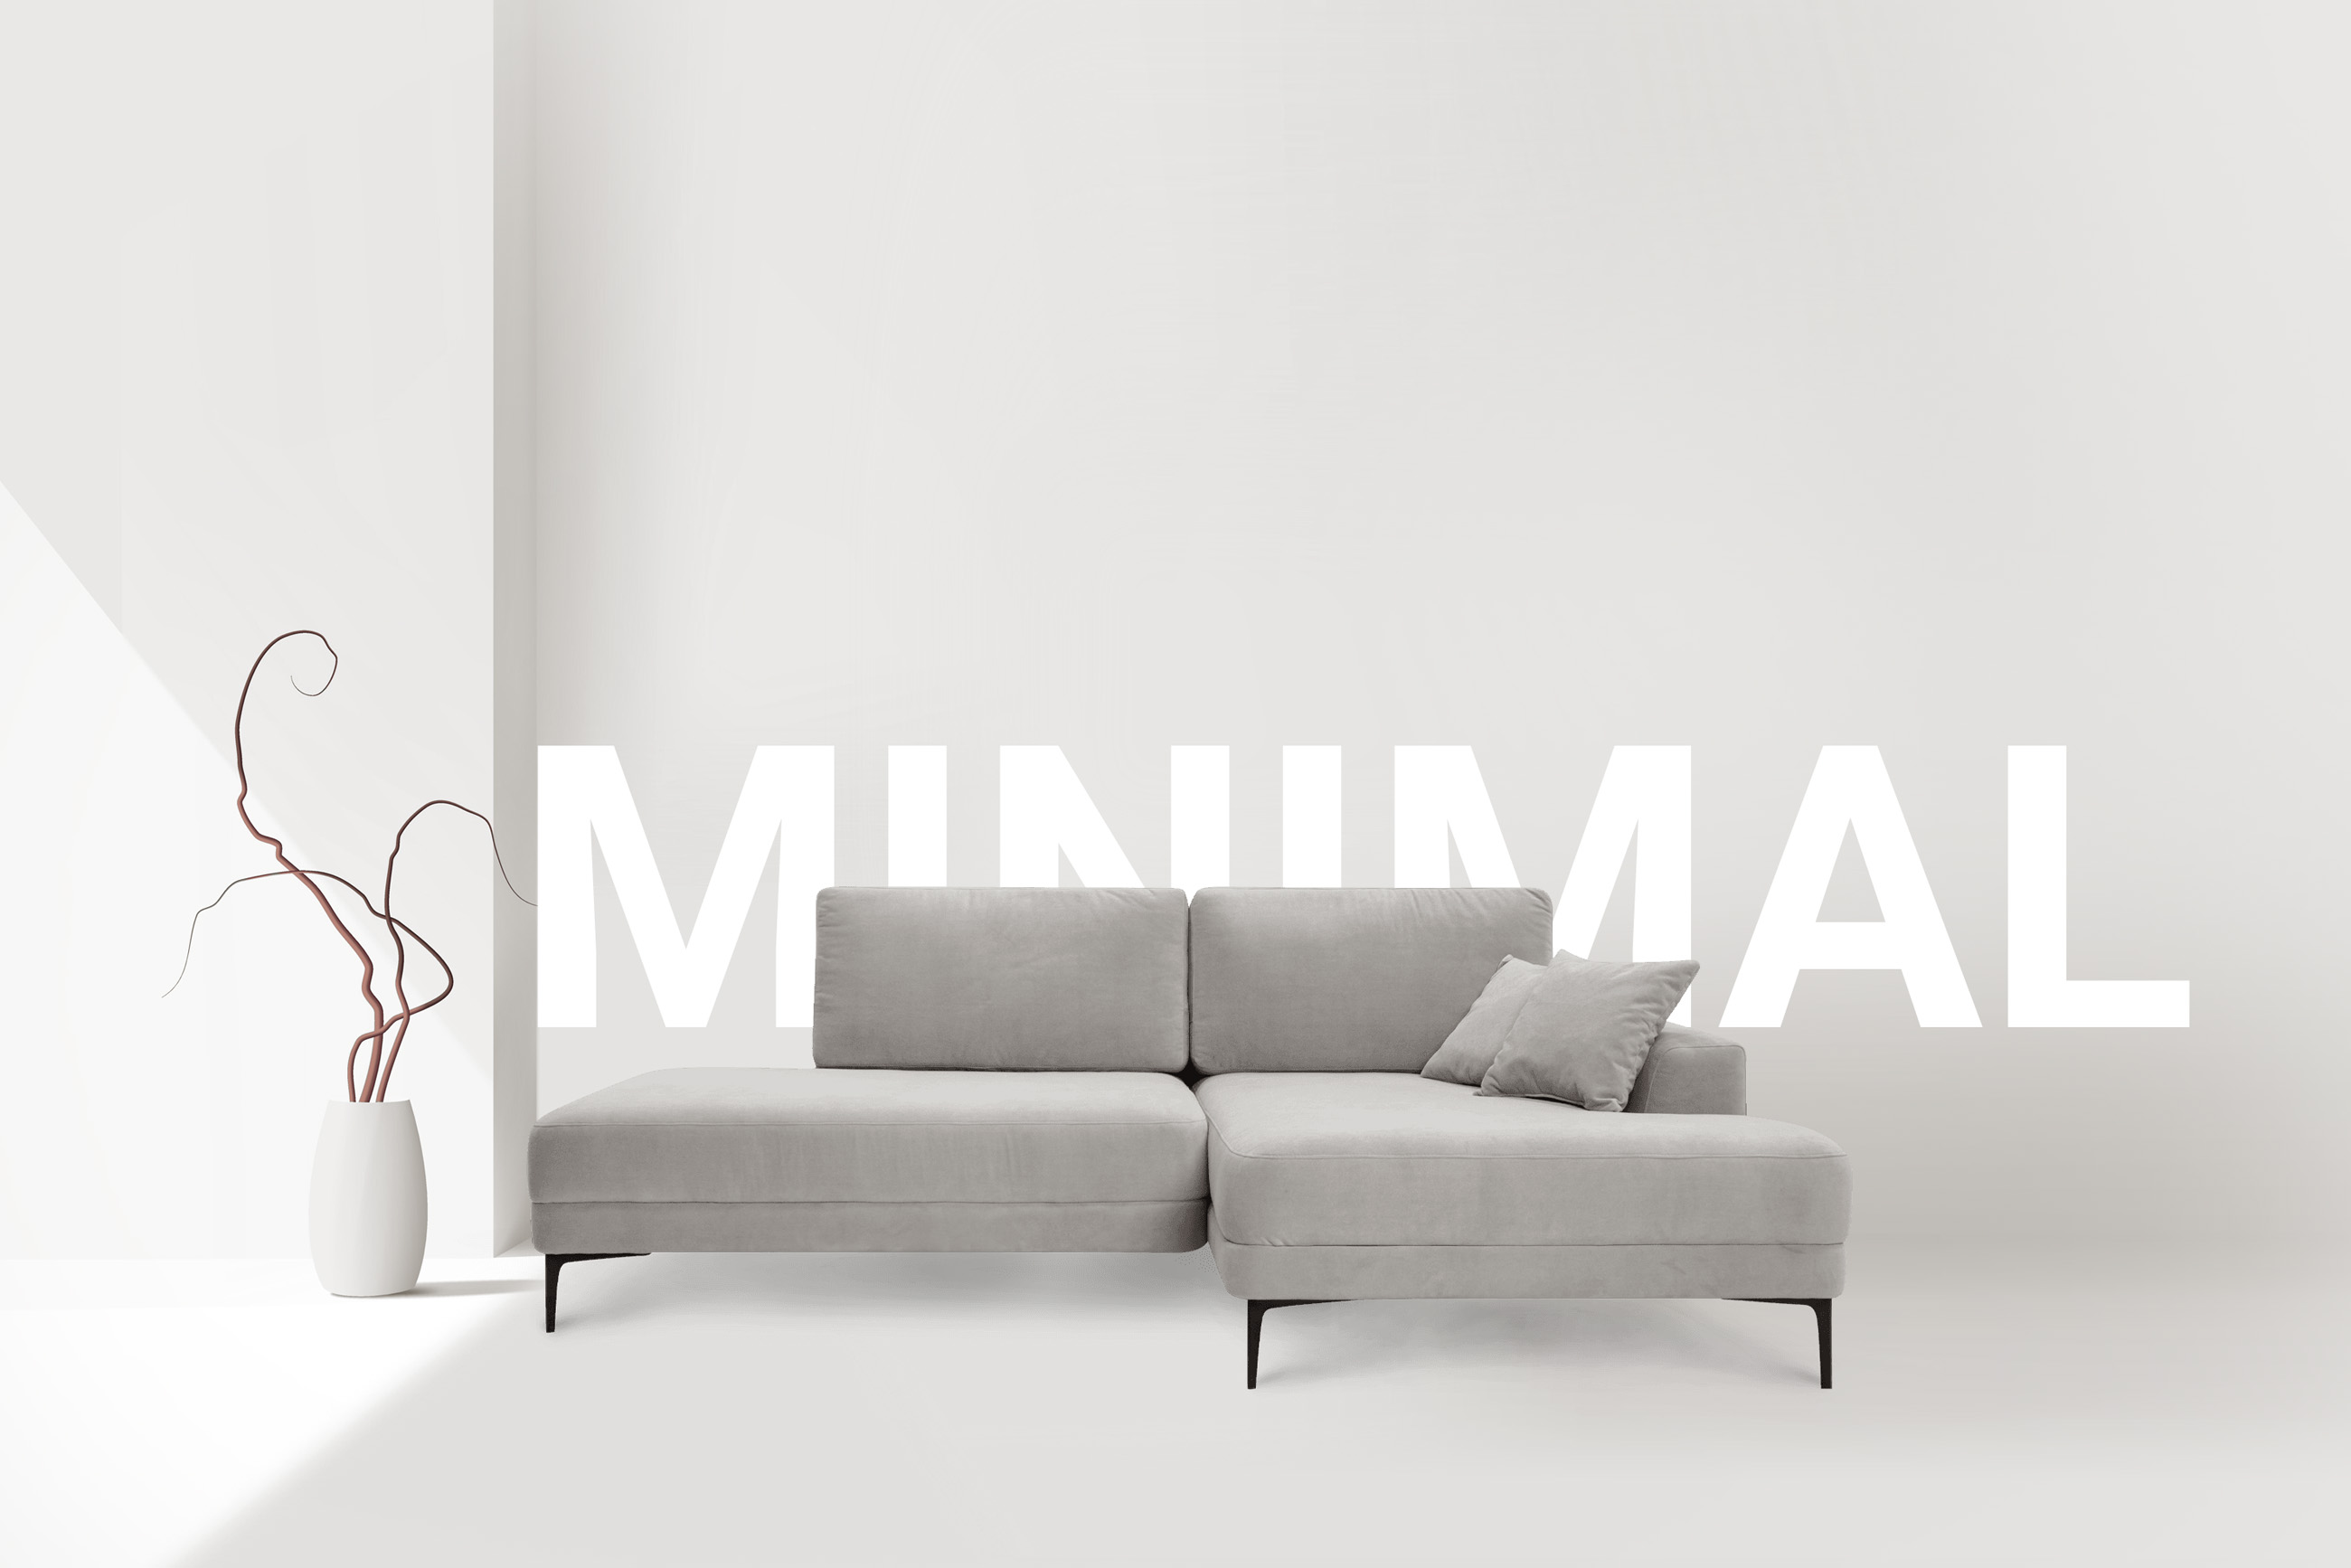 Диваны в стиле минимализм — купить минималистичный диван в Москве